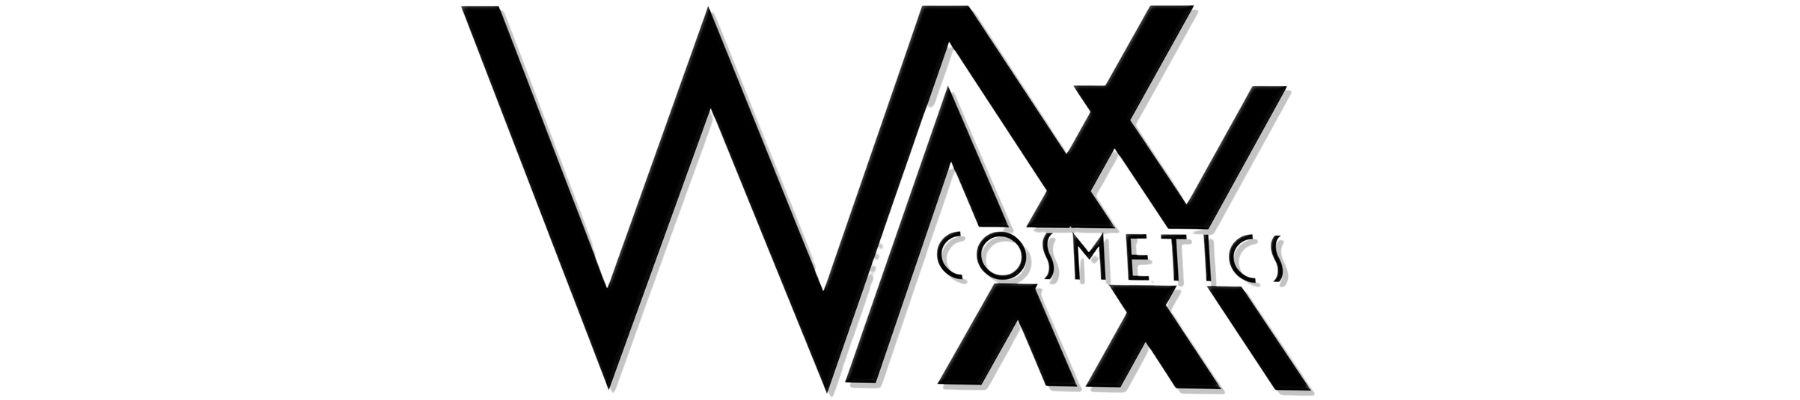 waxx-cosmetics